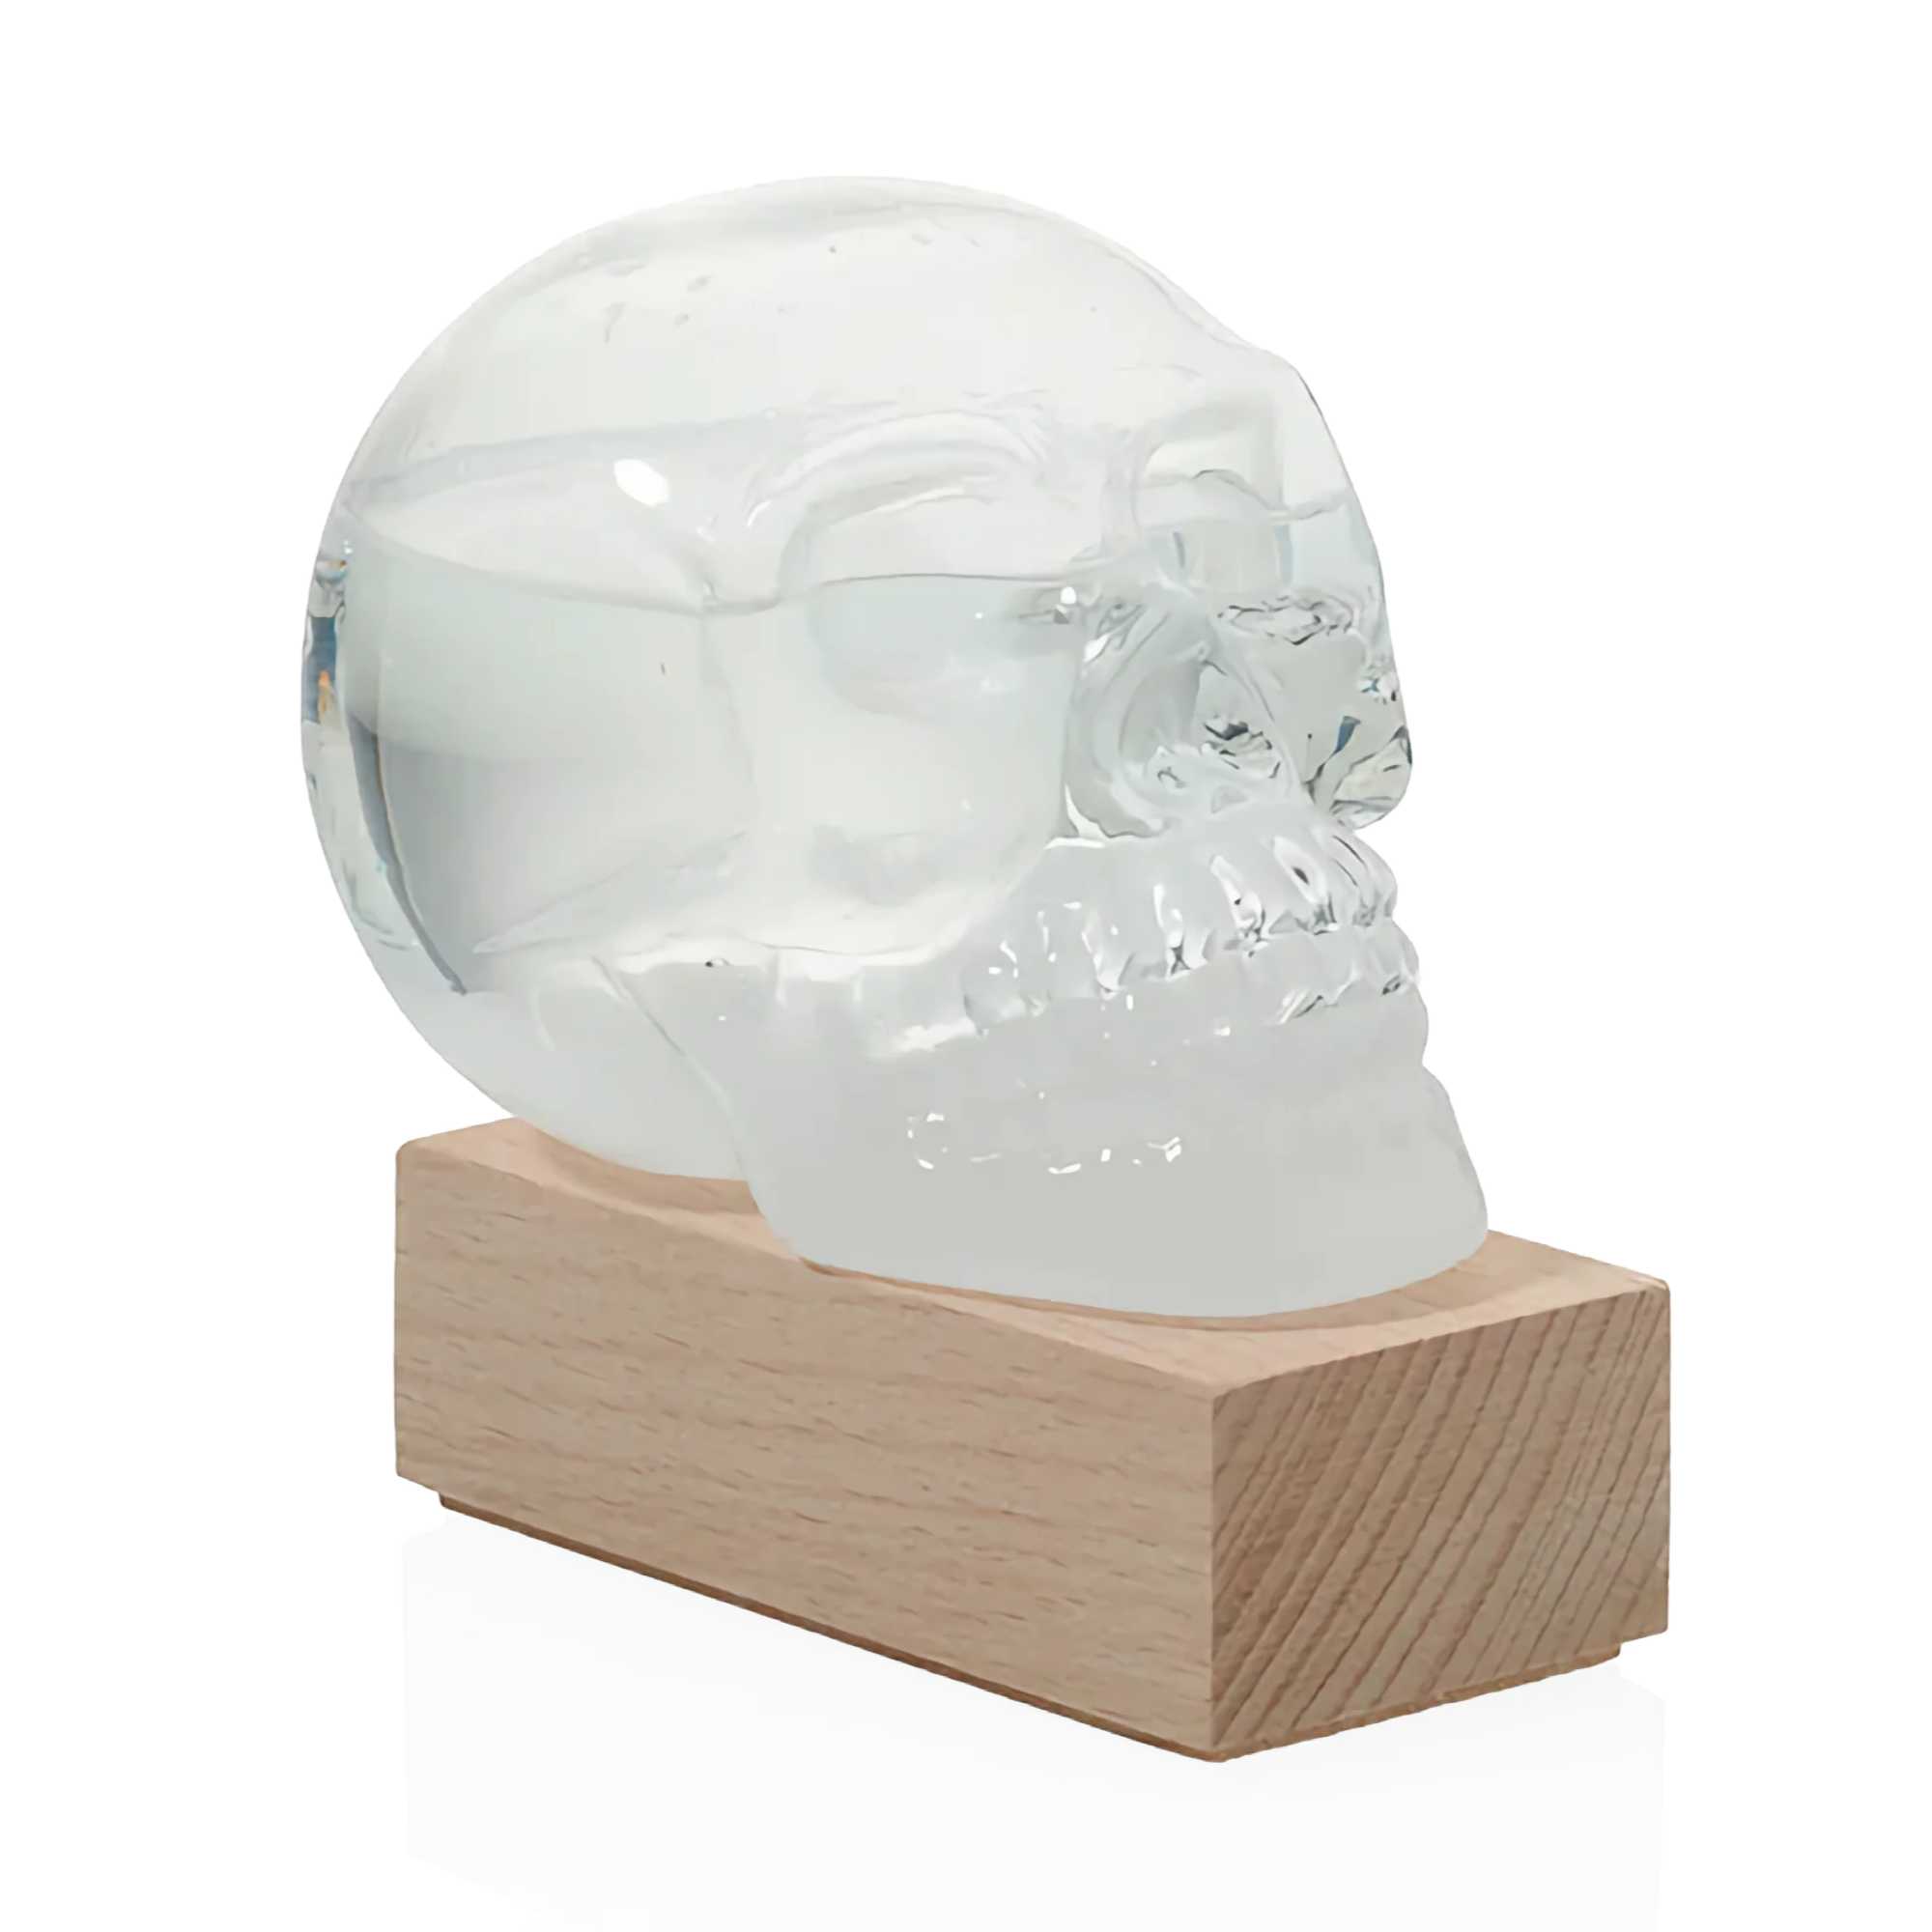 Bitten Skull storm glass (weather predictor)